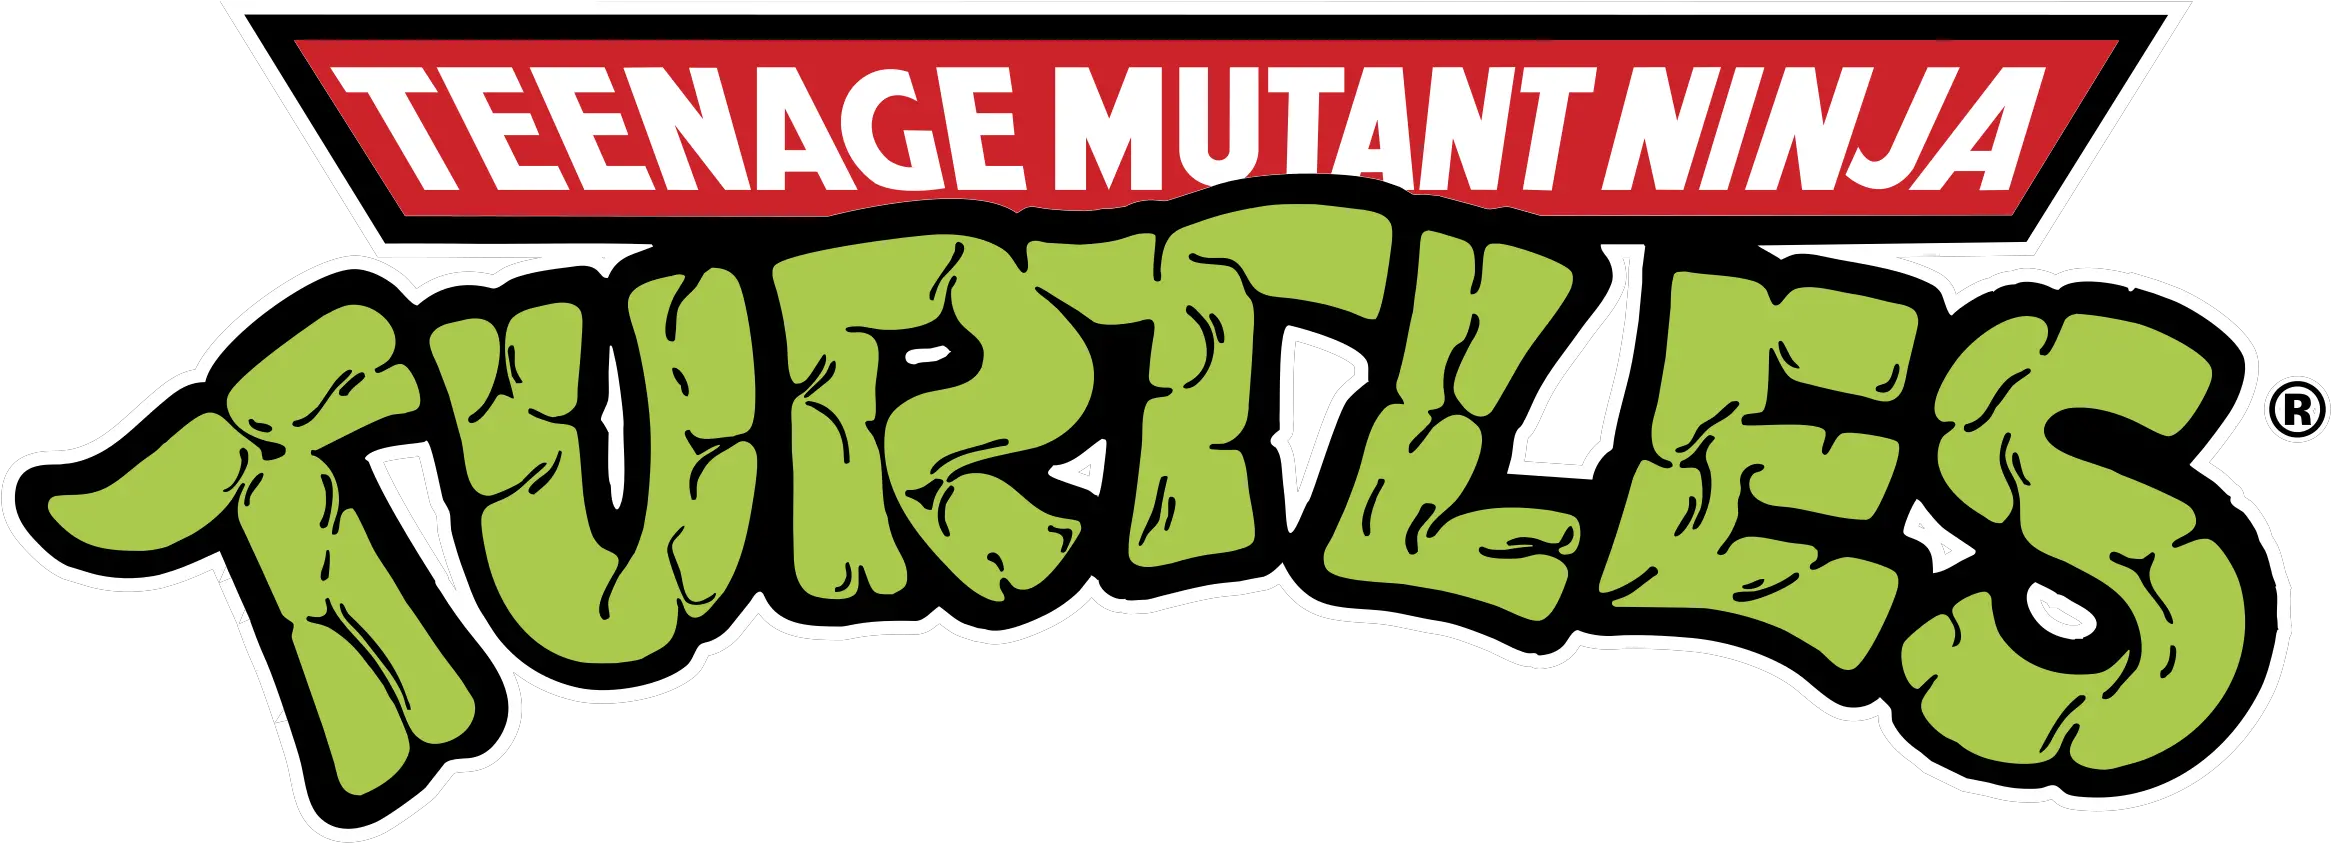 Teenage Mutant Ninja Turtles Logo Png Teenage Mutant Ninja Turtles Tmnt Logo Png